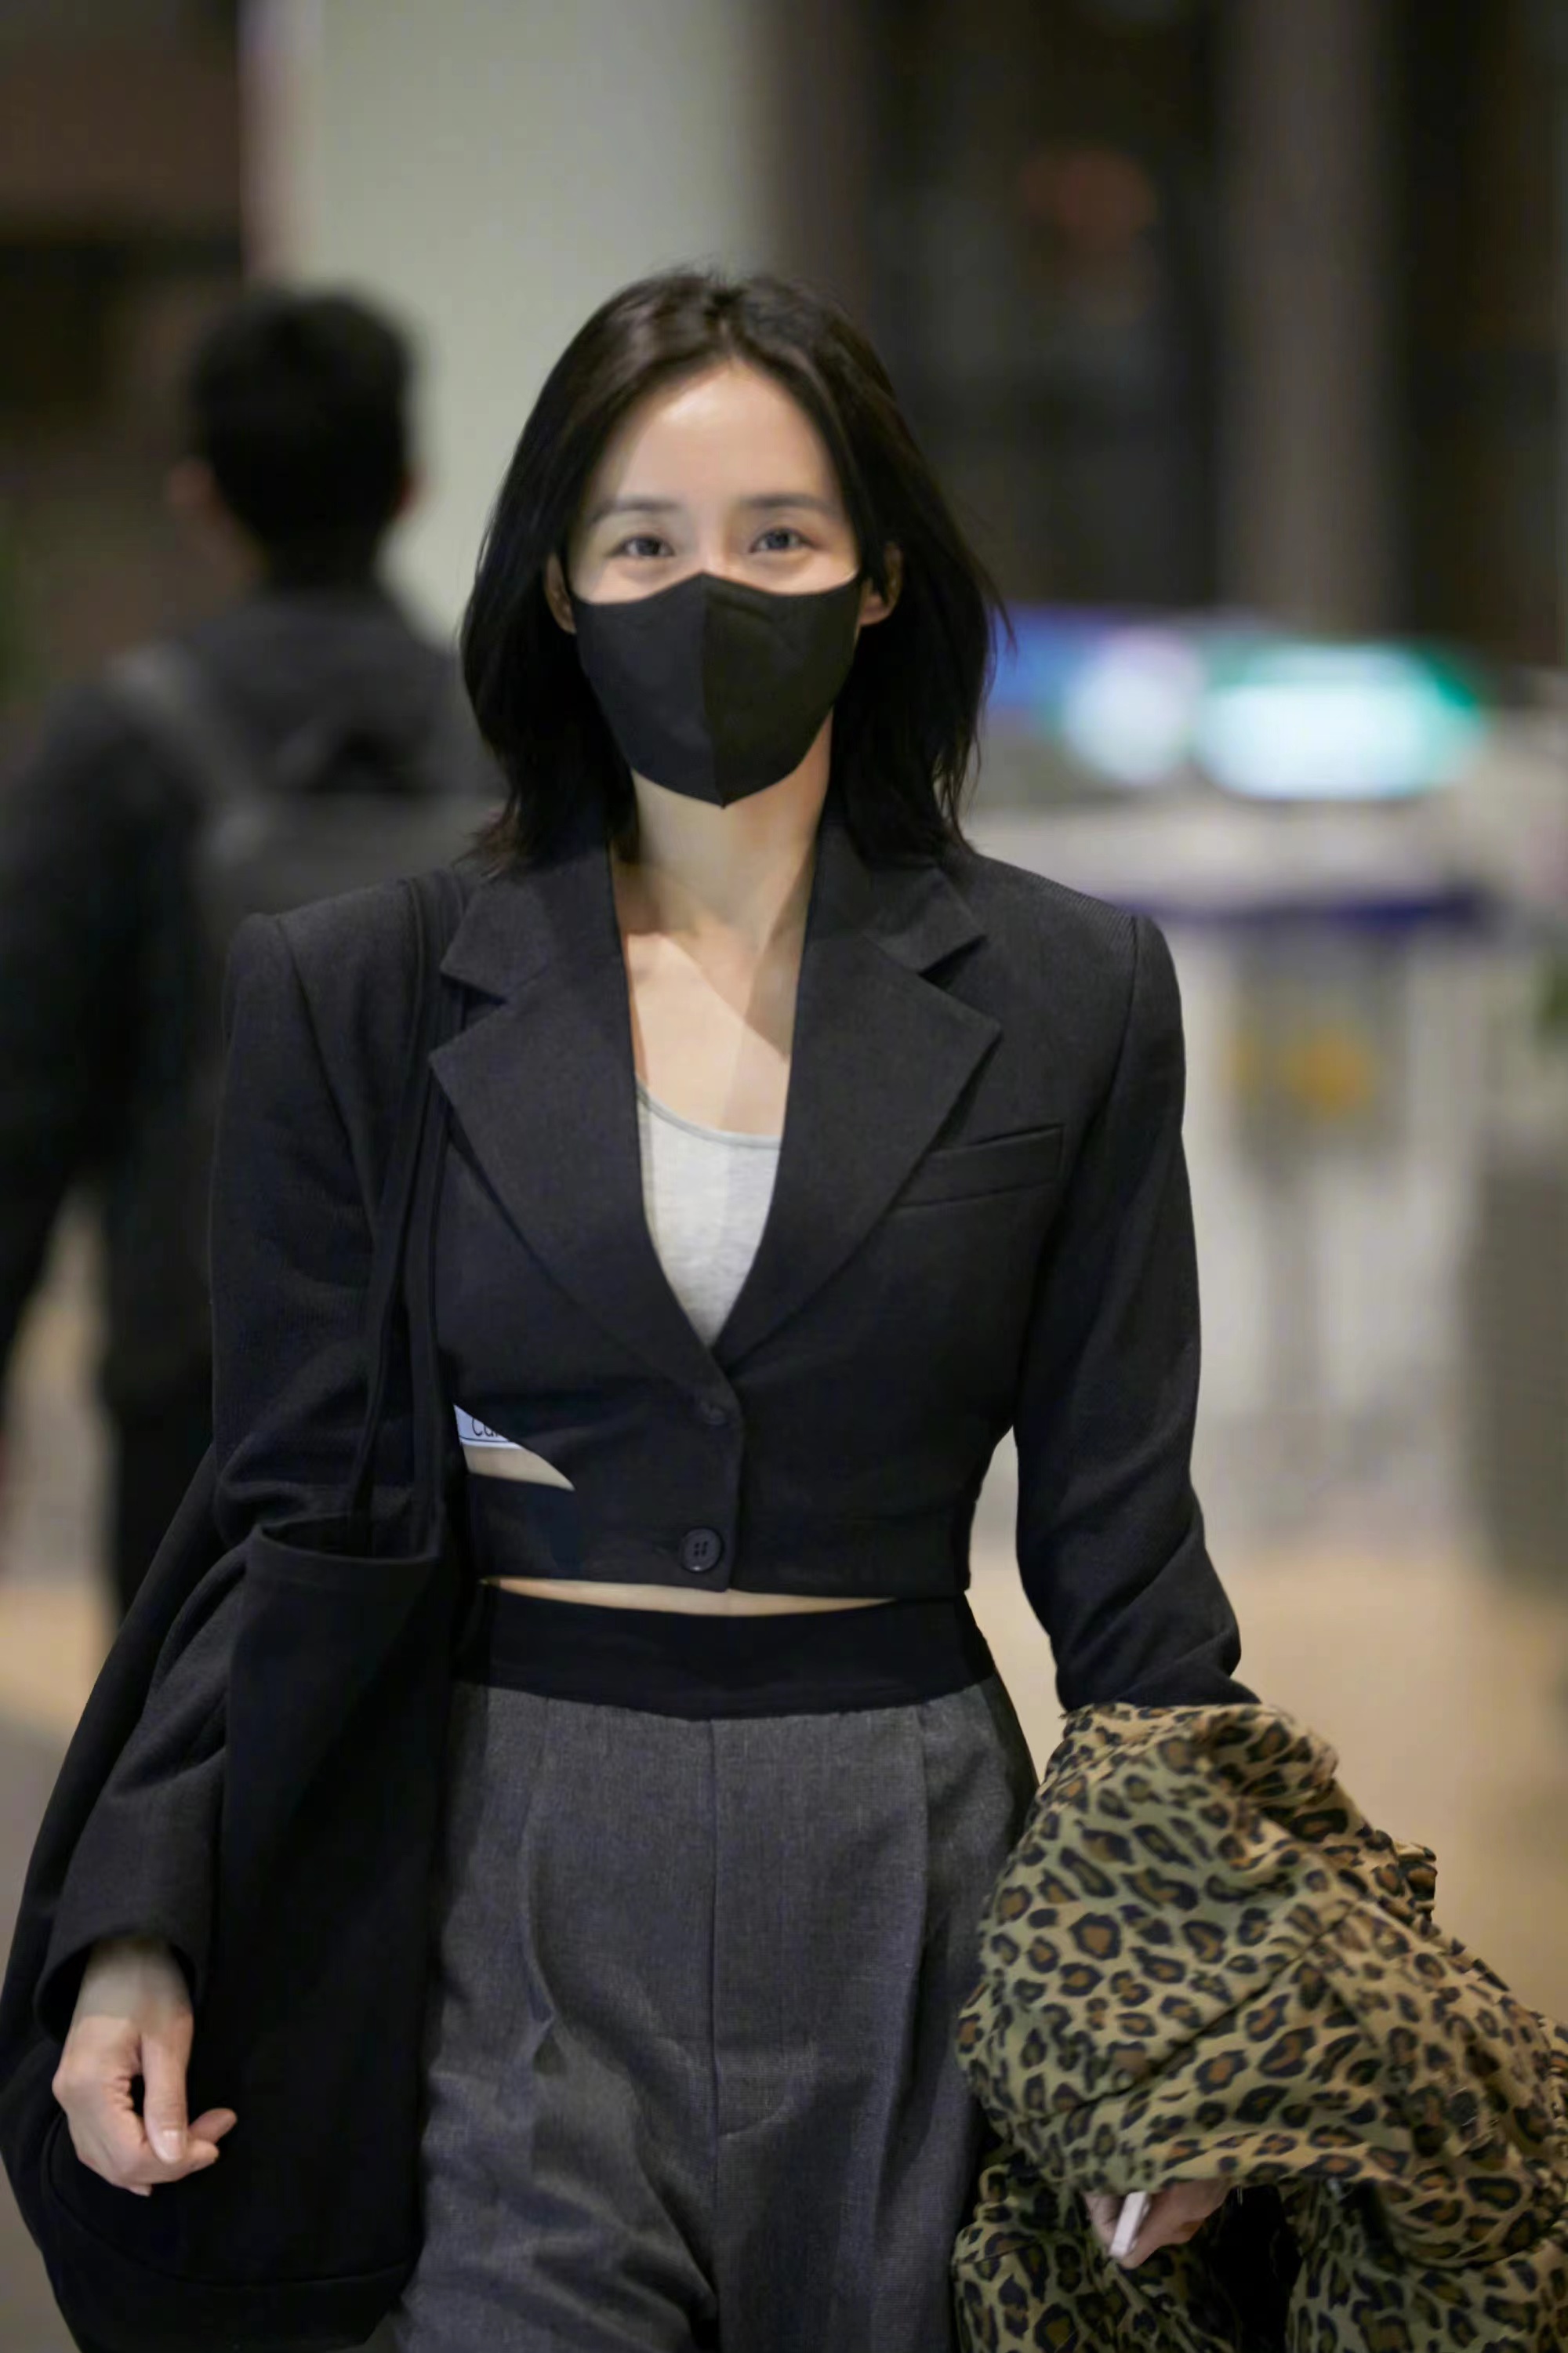 40岁王智现身机场,黑色短款西装搭配阔腿裤,又飒又美气质真好!